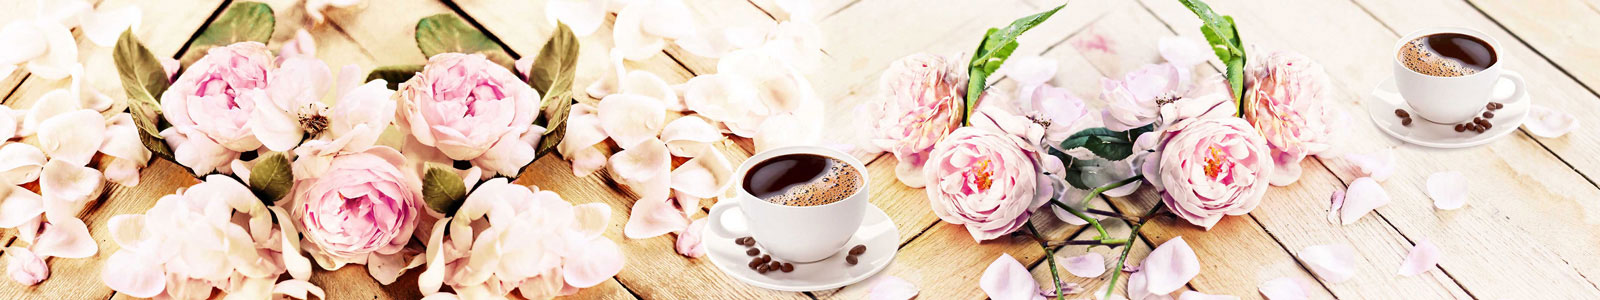 №5955 - Нежные цветы на столе с чашками кофе